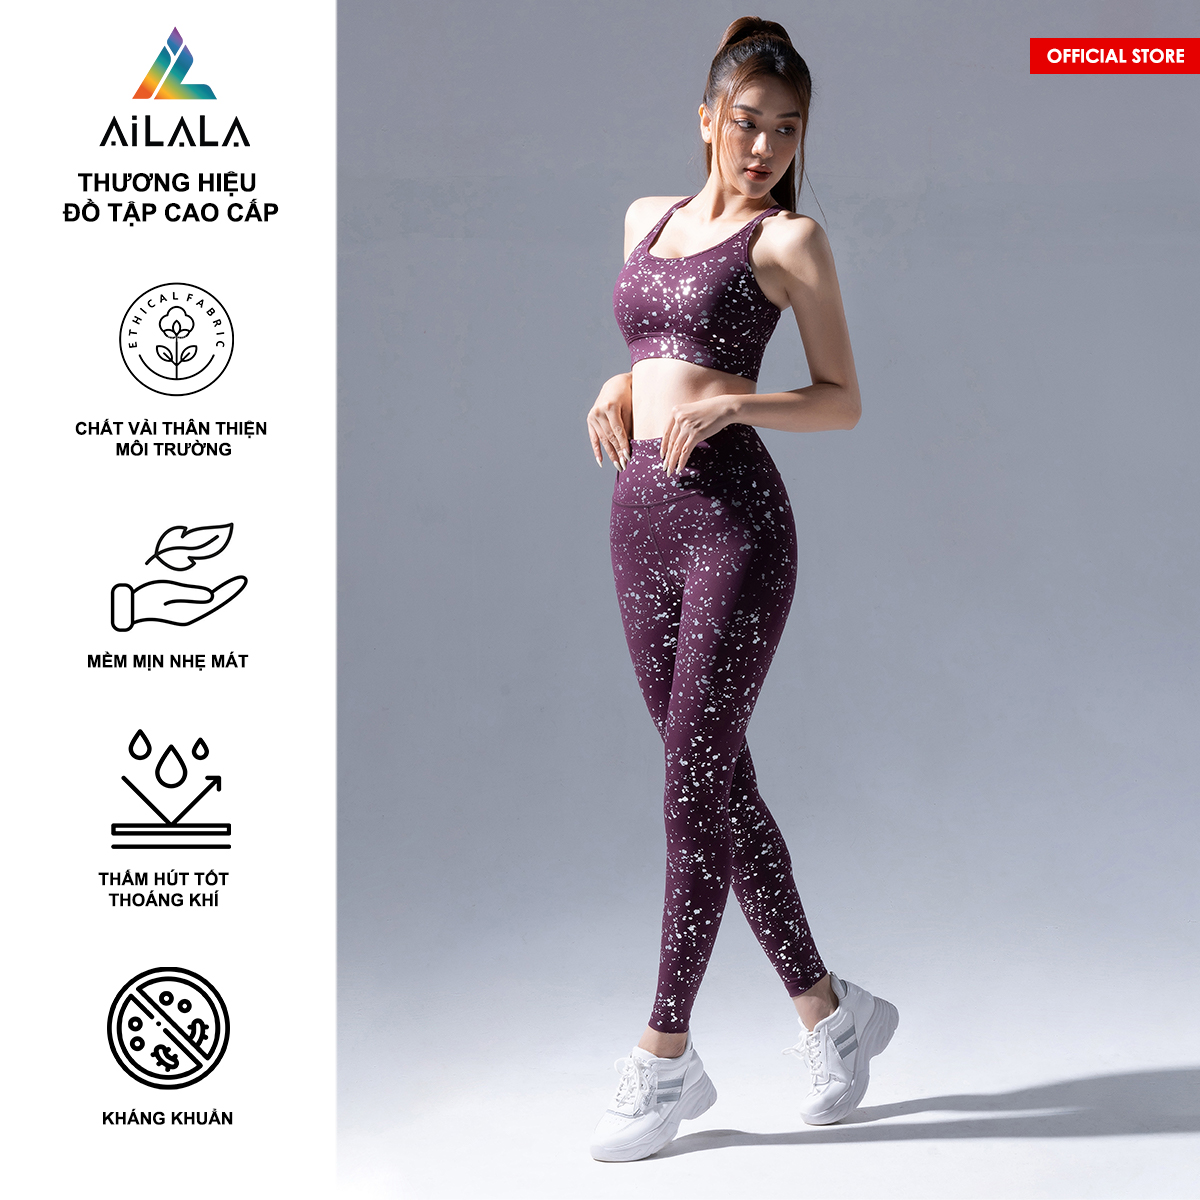 Bộ quần áo thể thao nữ AiLALA LUX47, Đồ tập Yoga Gym Pilates, chất vải Hi-tech cao cấp